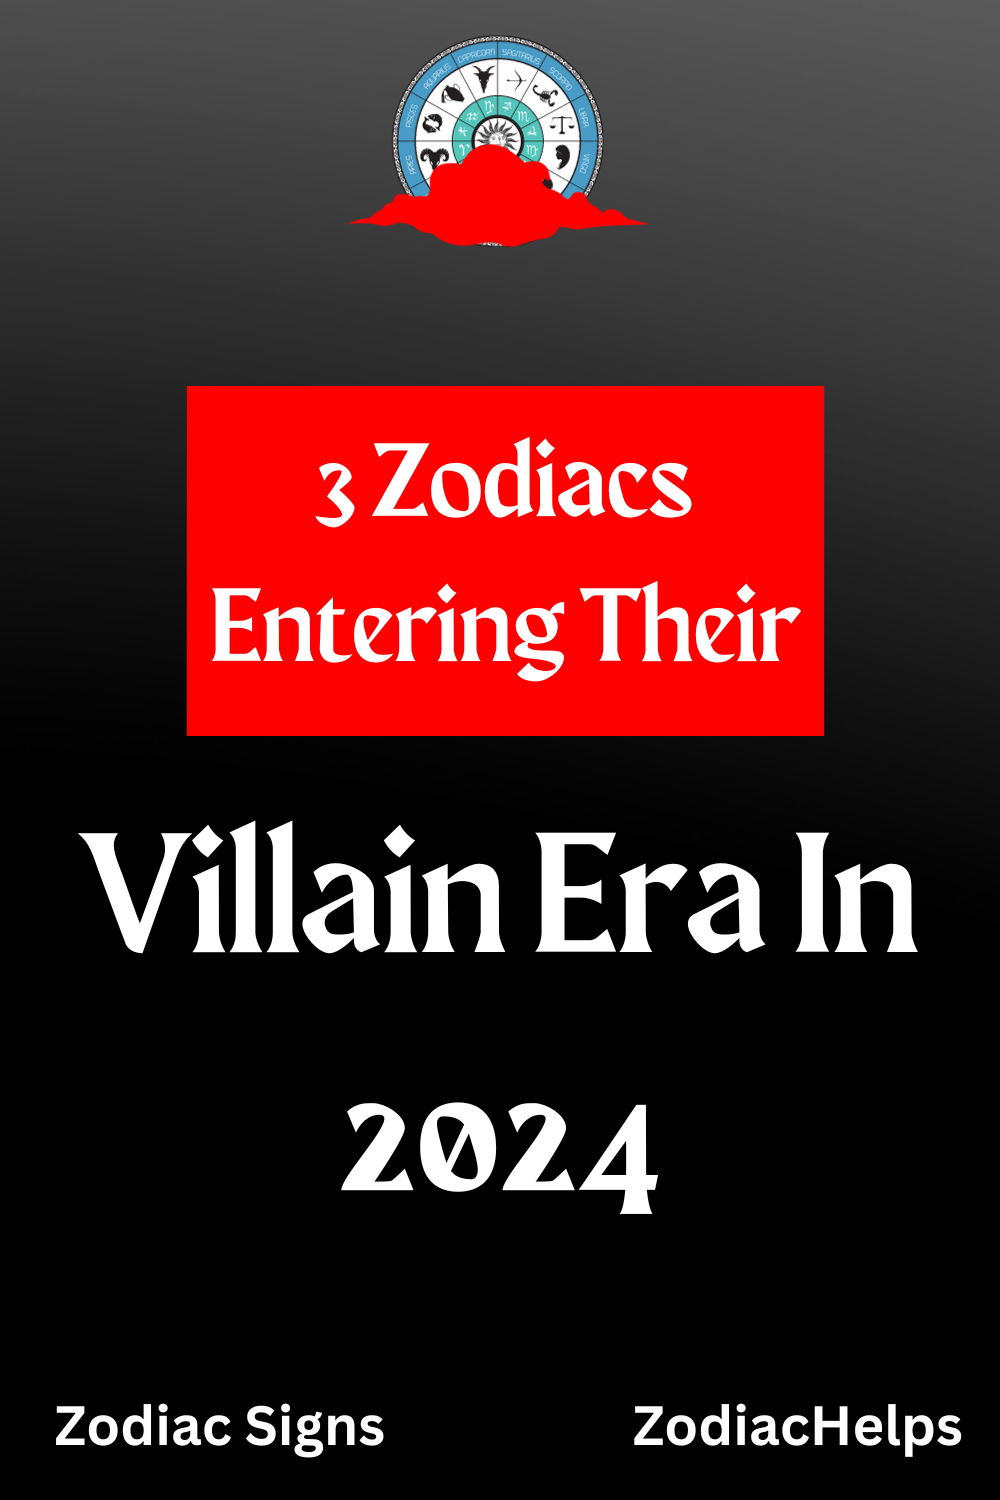 3 Zodiacs Entering Their Villain Era In 2024